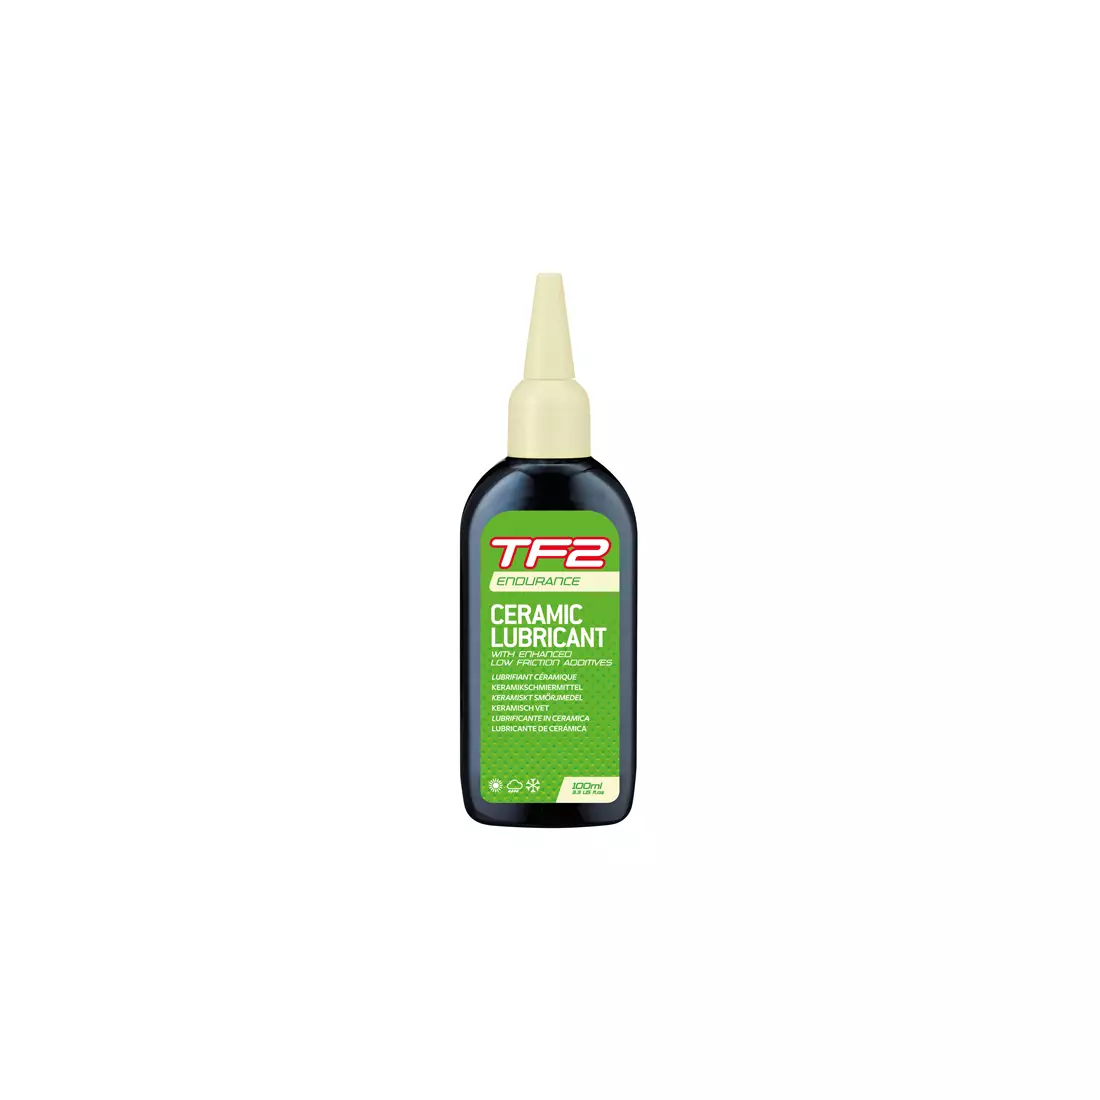 WELDTITE olej do łańcucha tf2 endurance ceramic lubricant (warunki suche i mokre) 100ml WLD-03065